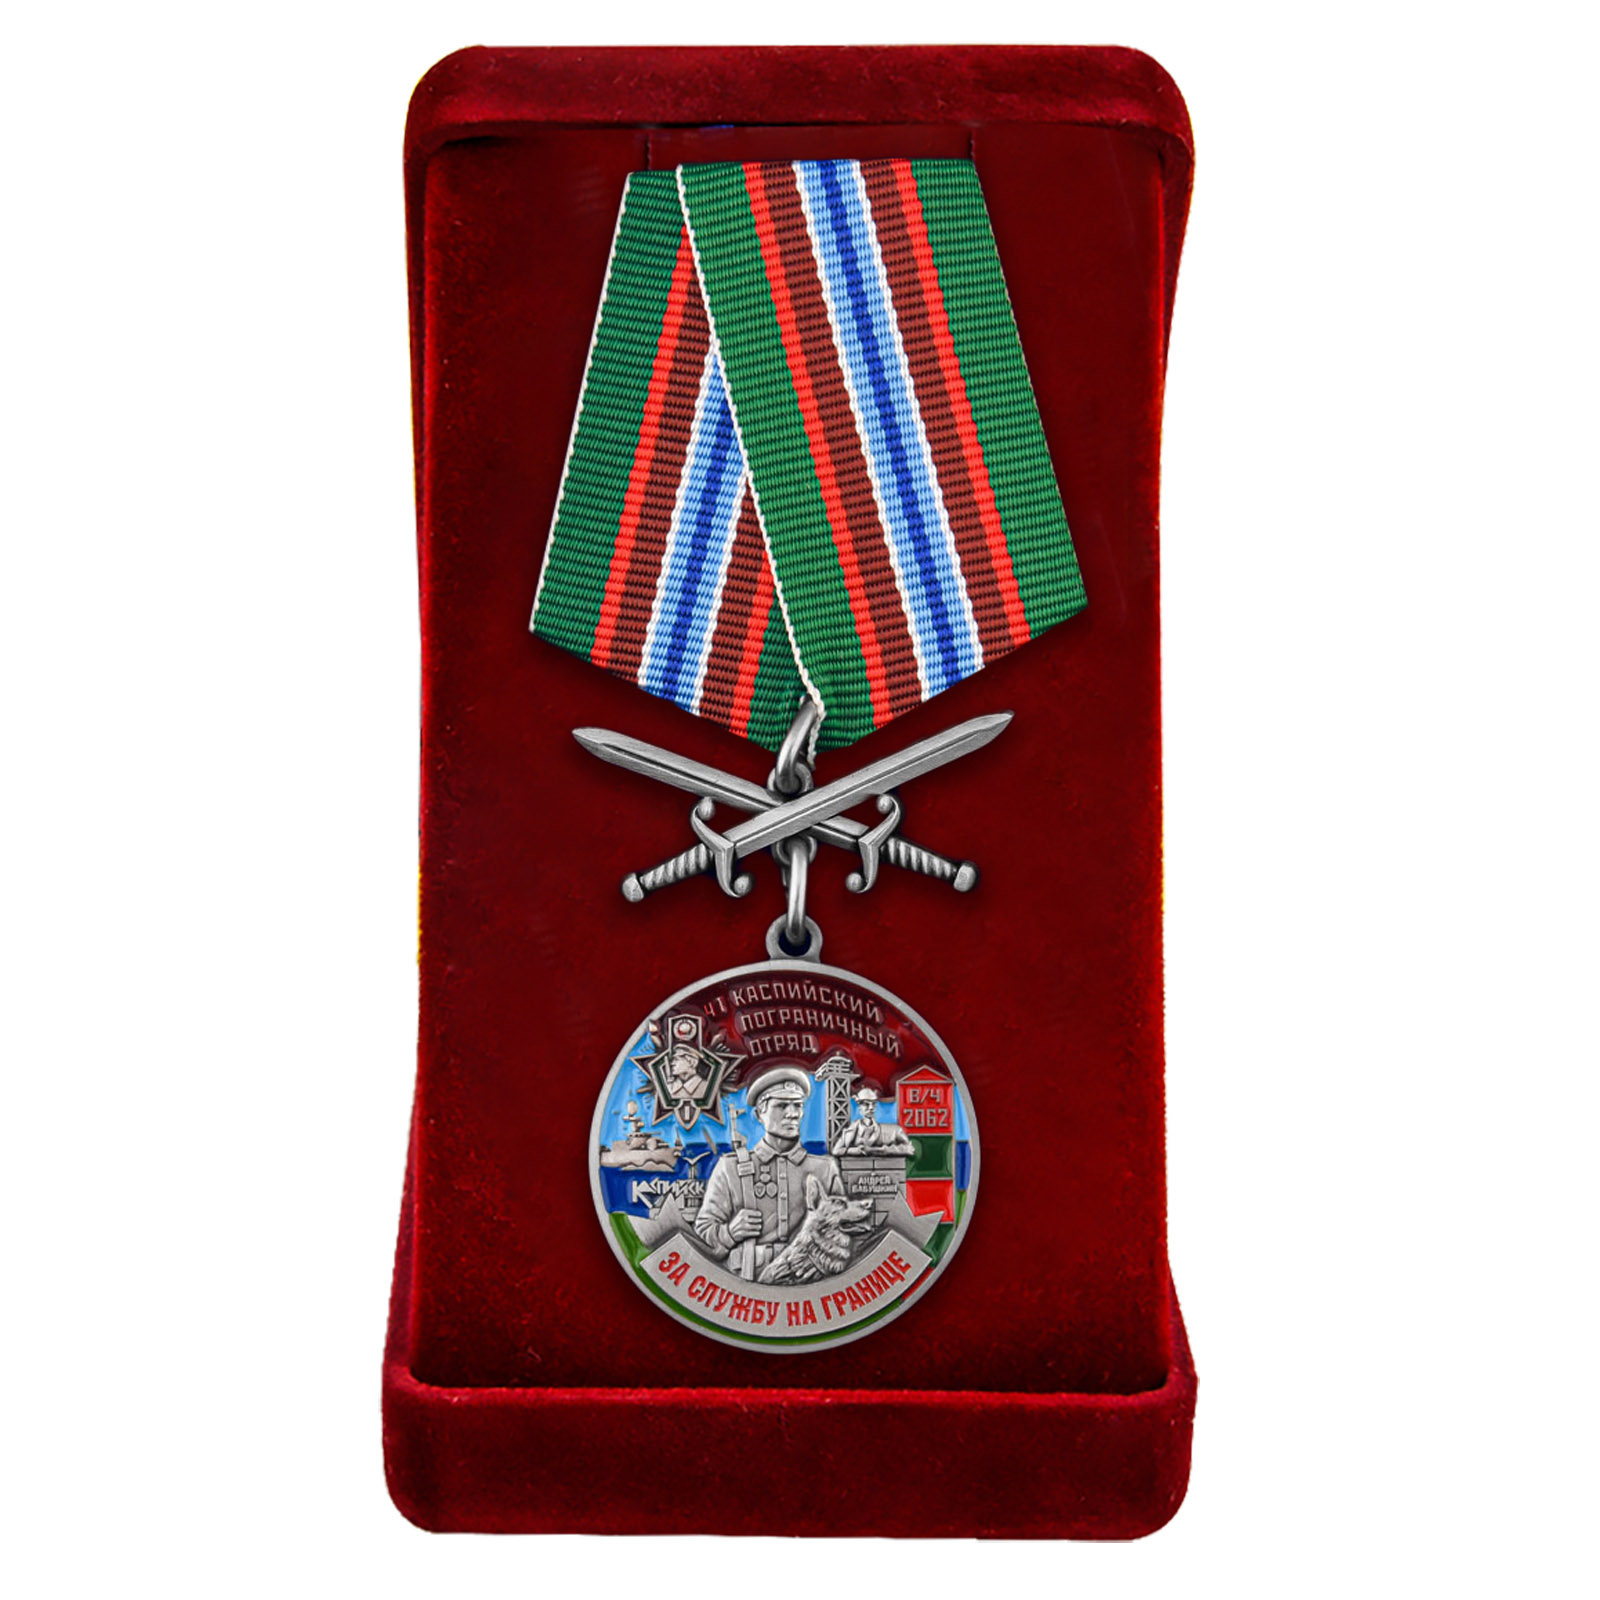 Купить медаль "За службу в Каспийском погранотряде" в бархатистом футляре